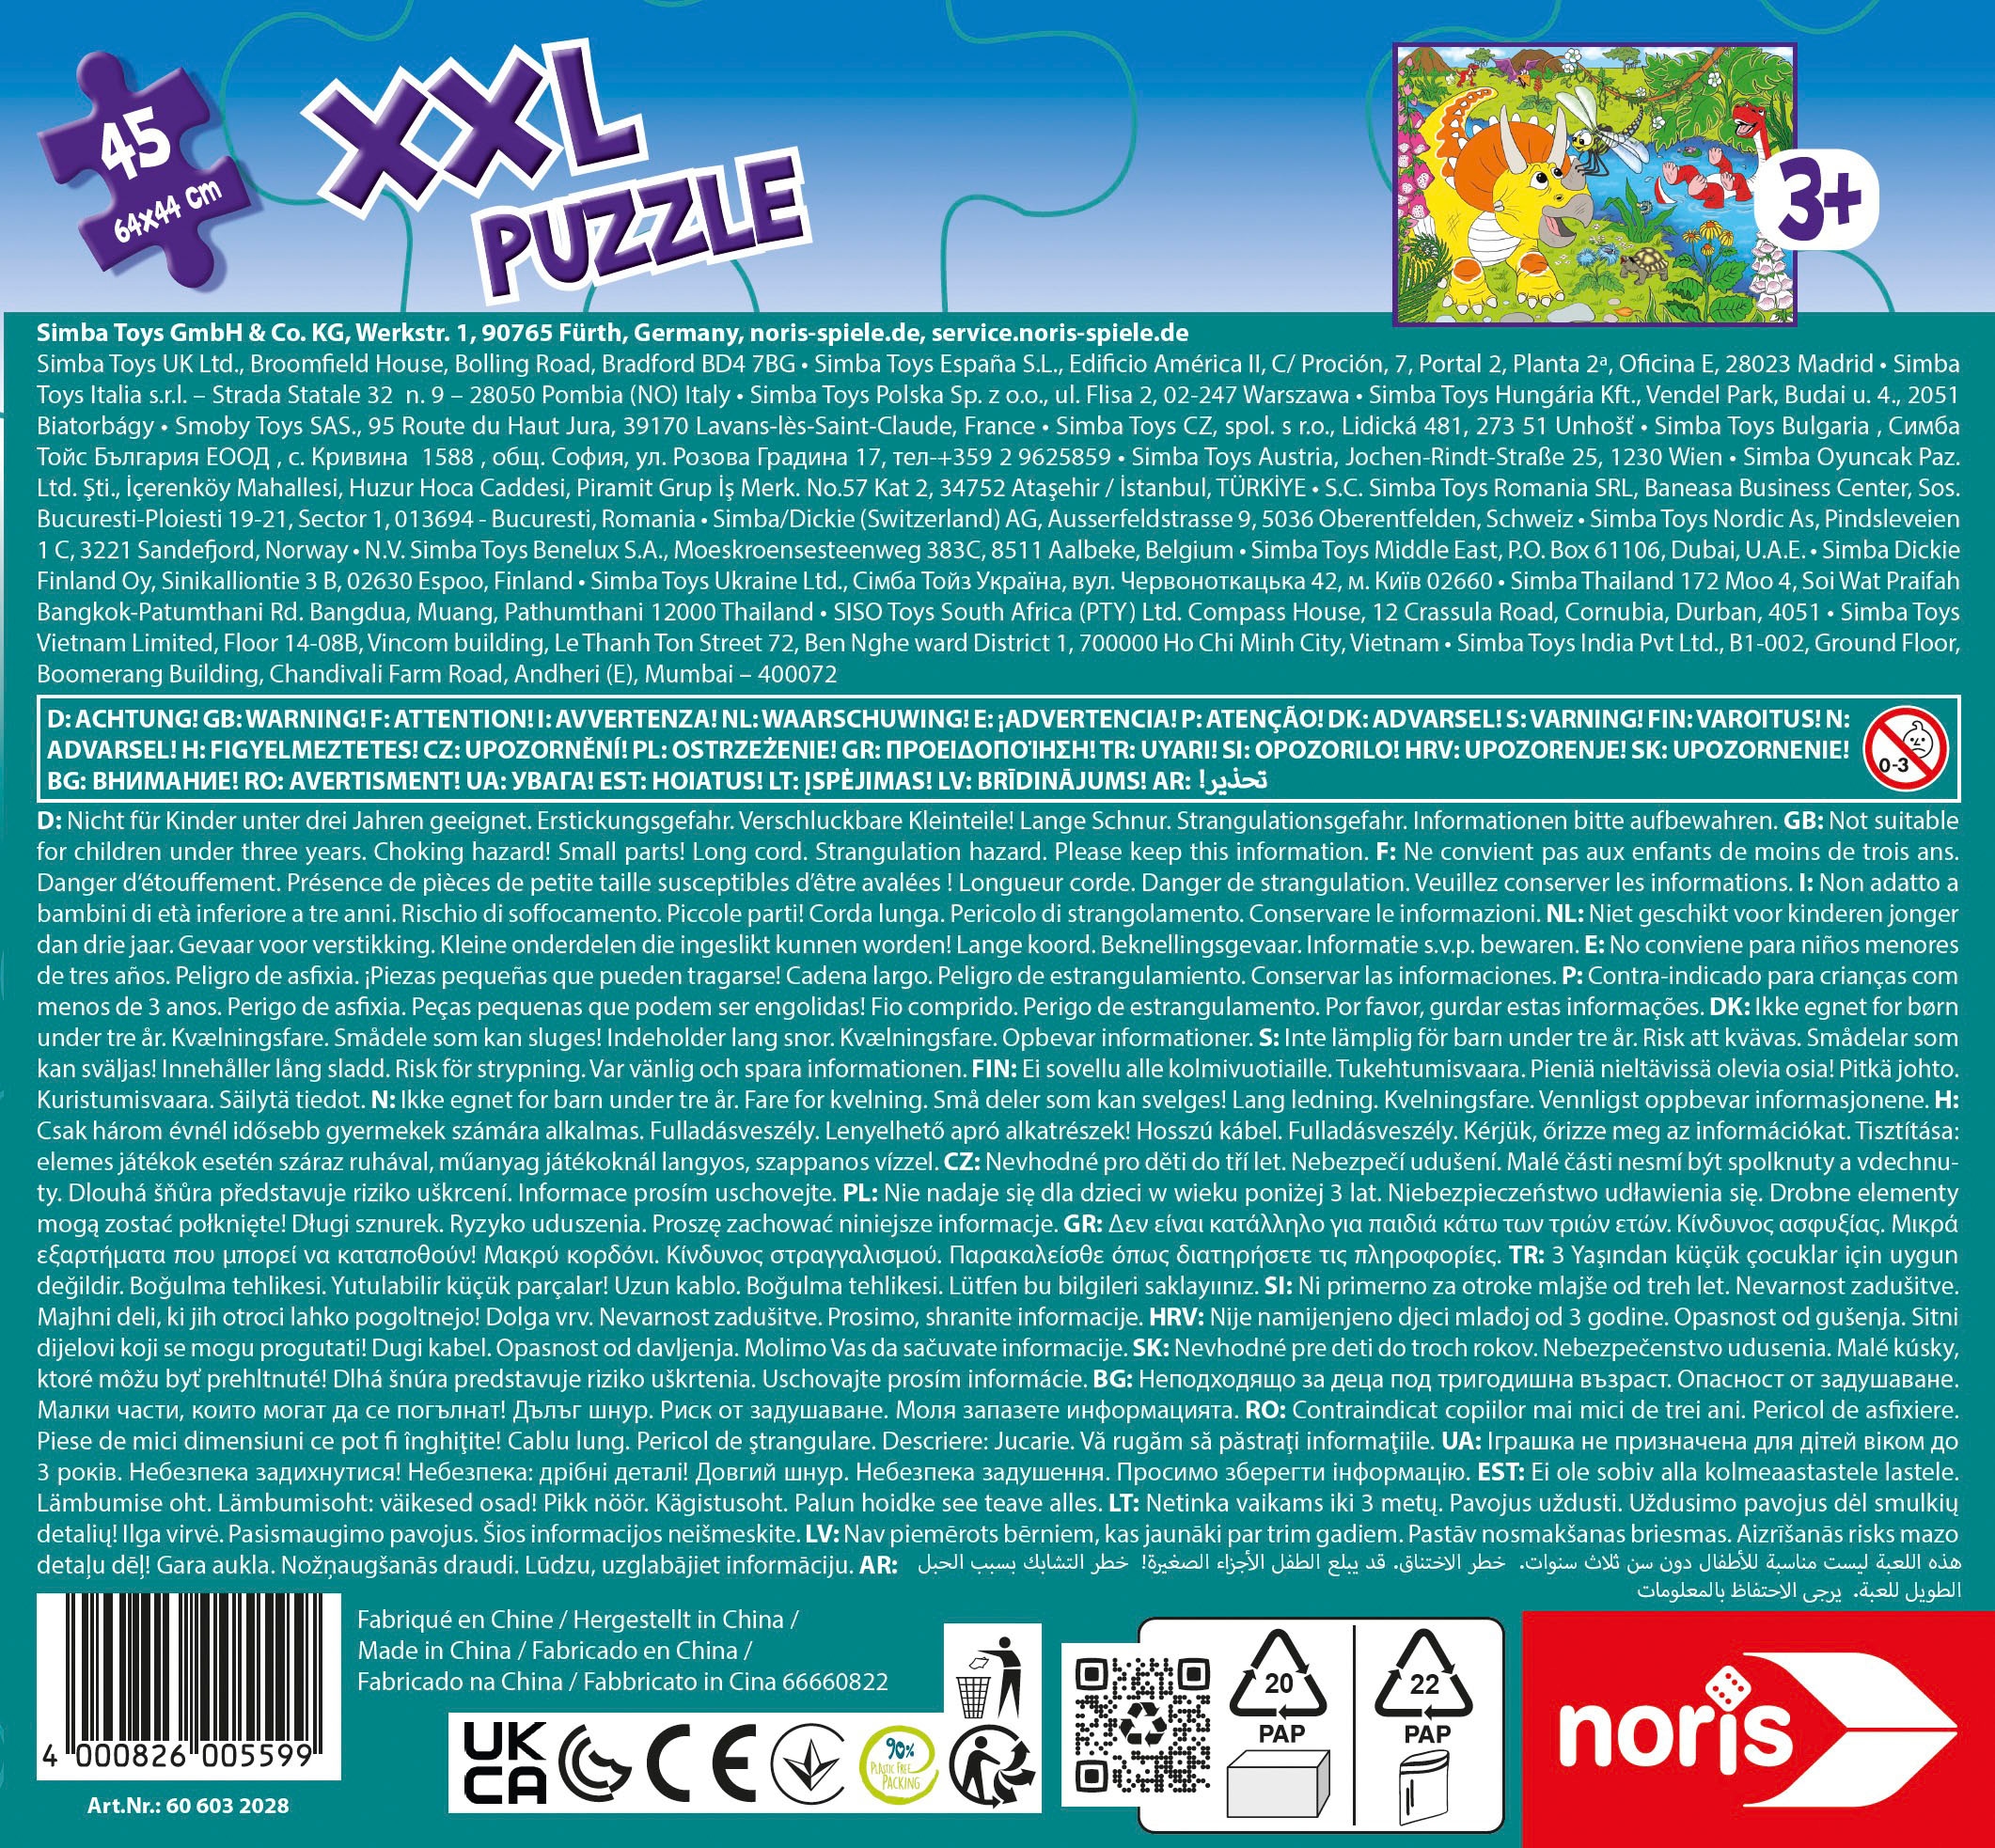 Noris Puzzle »XXL Puzzle Dinosaurier«